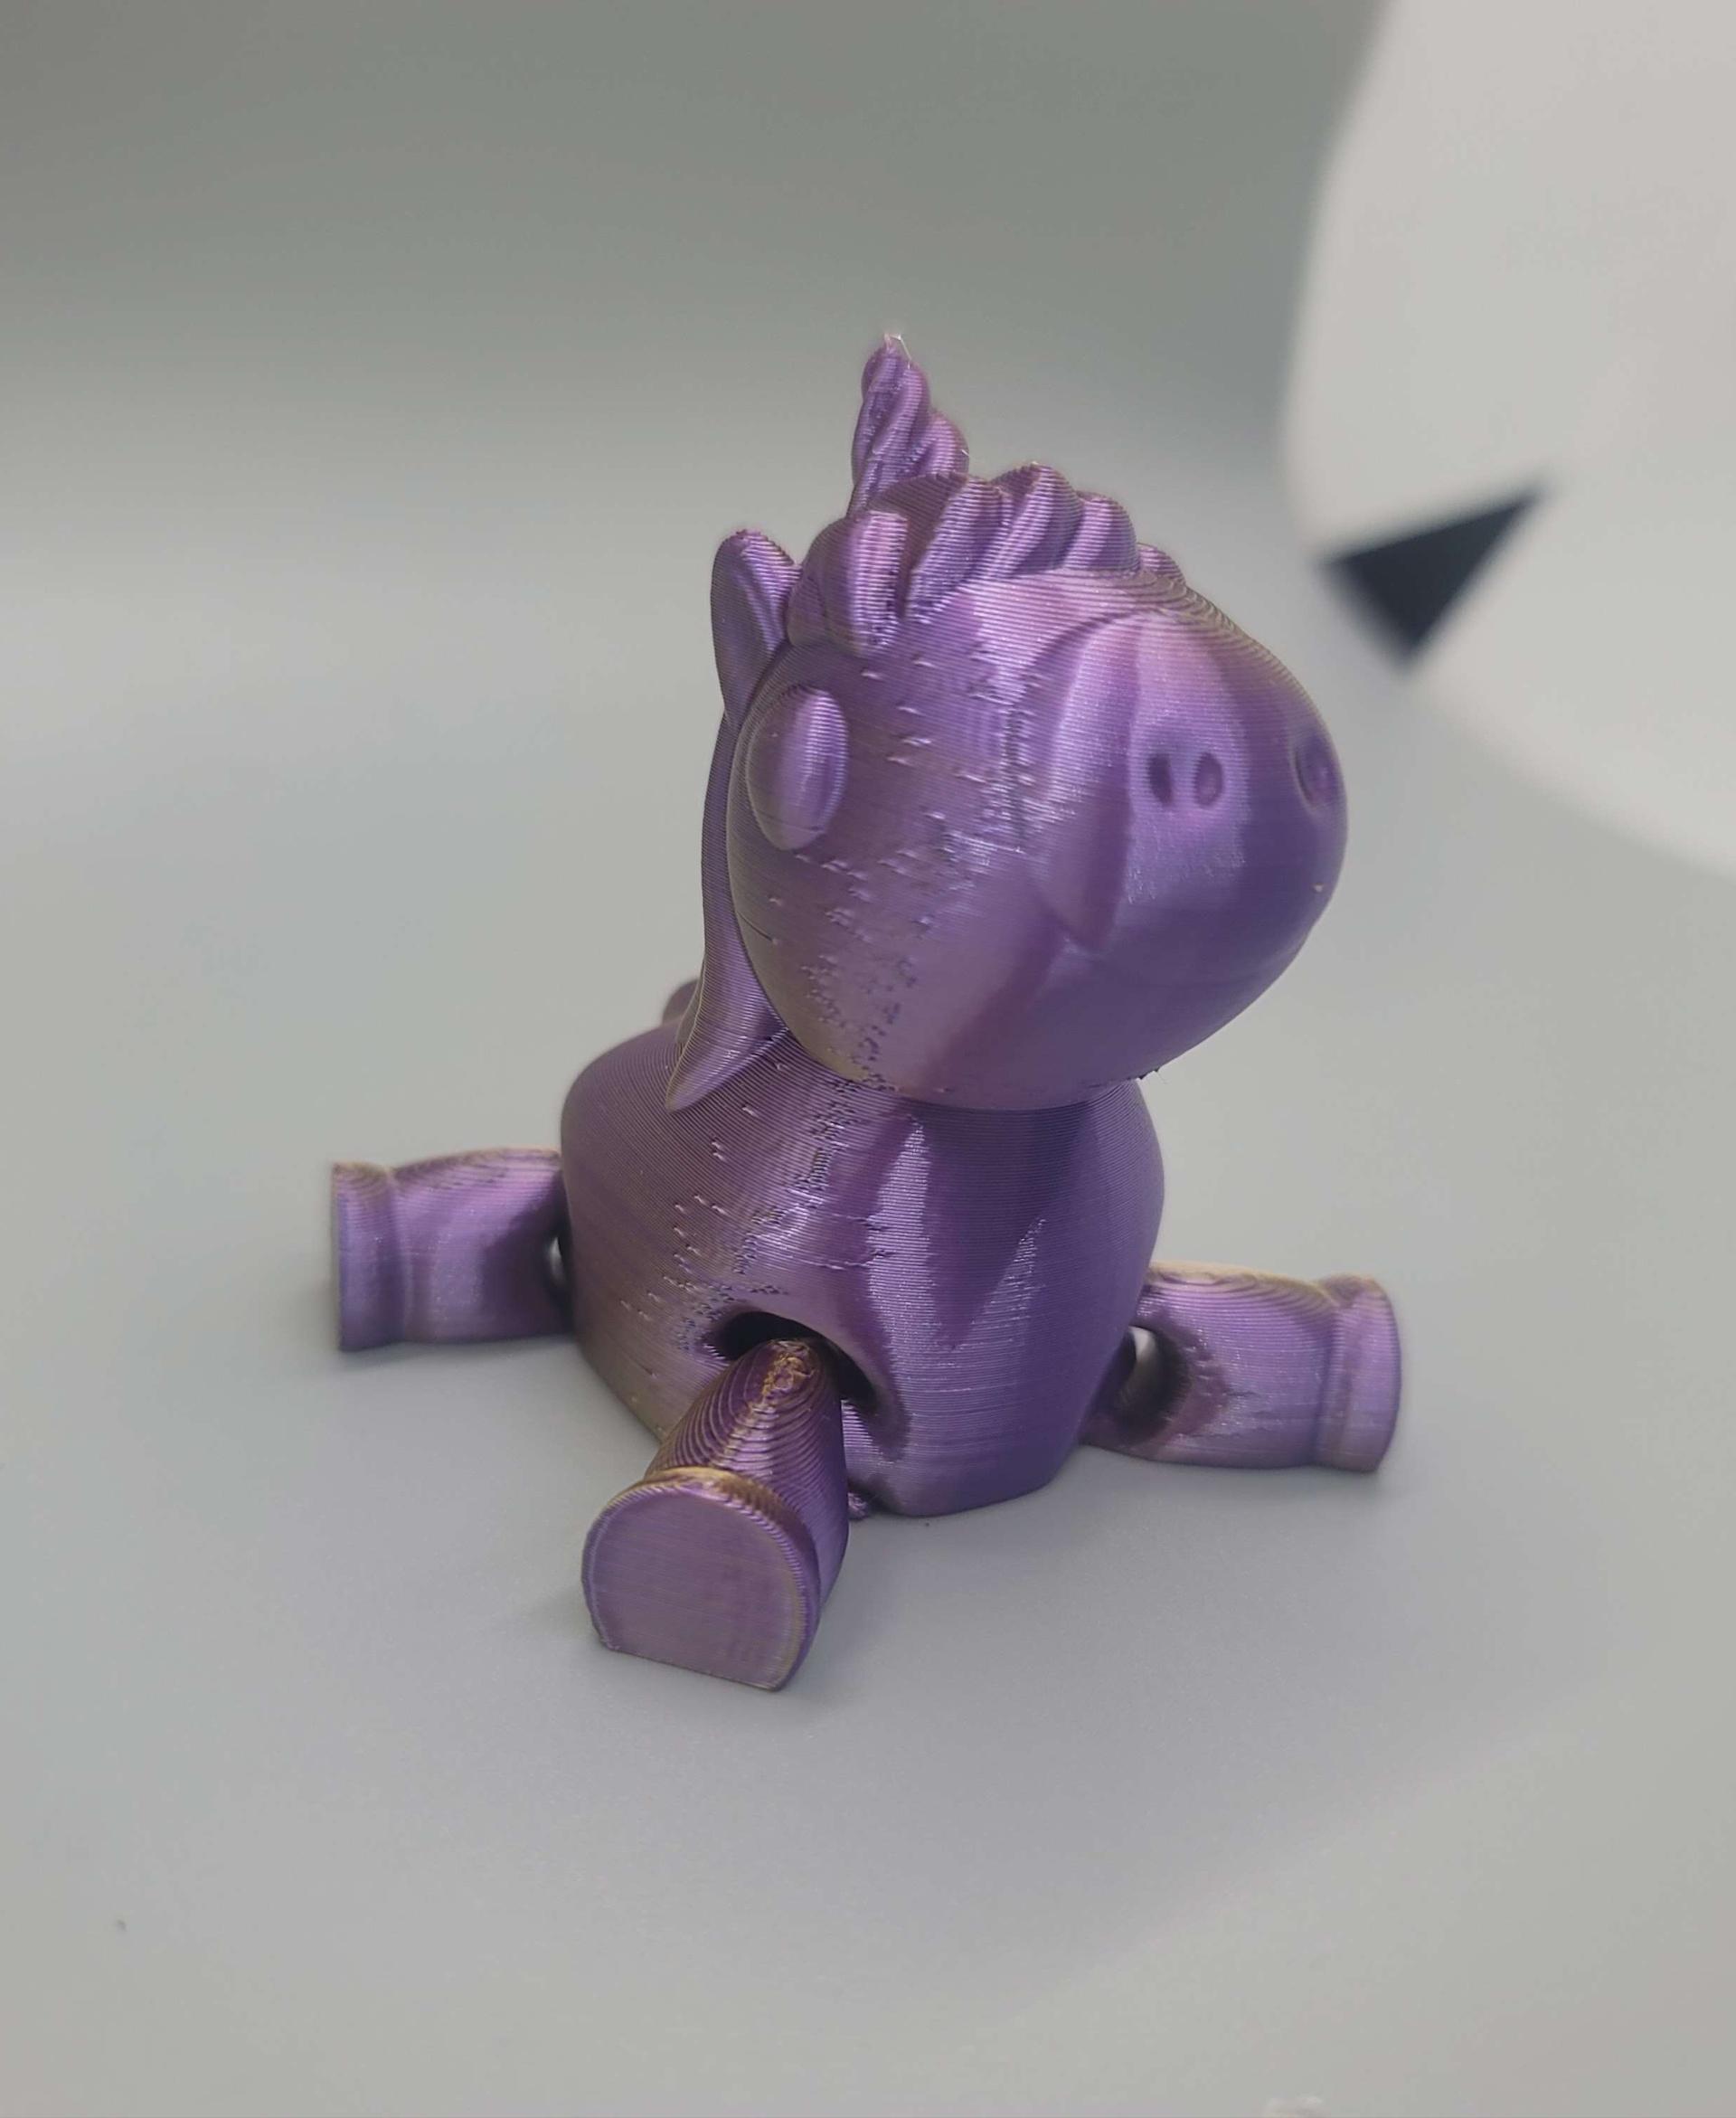 Unicorn 3d model